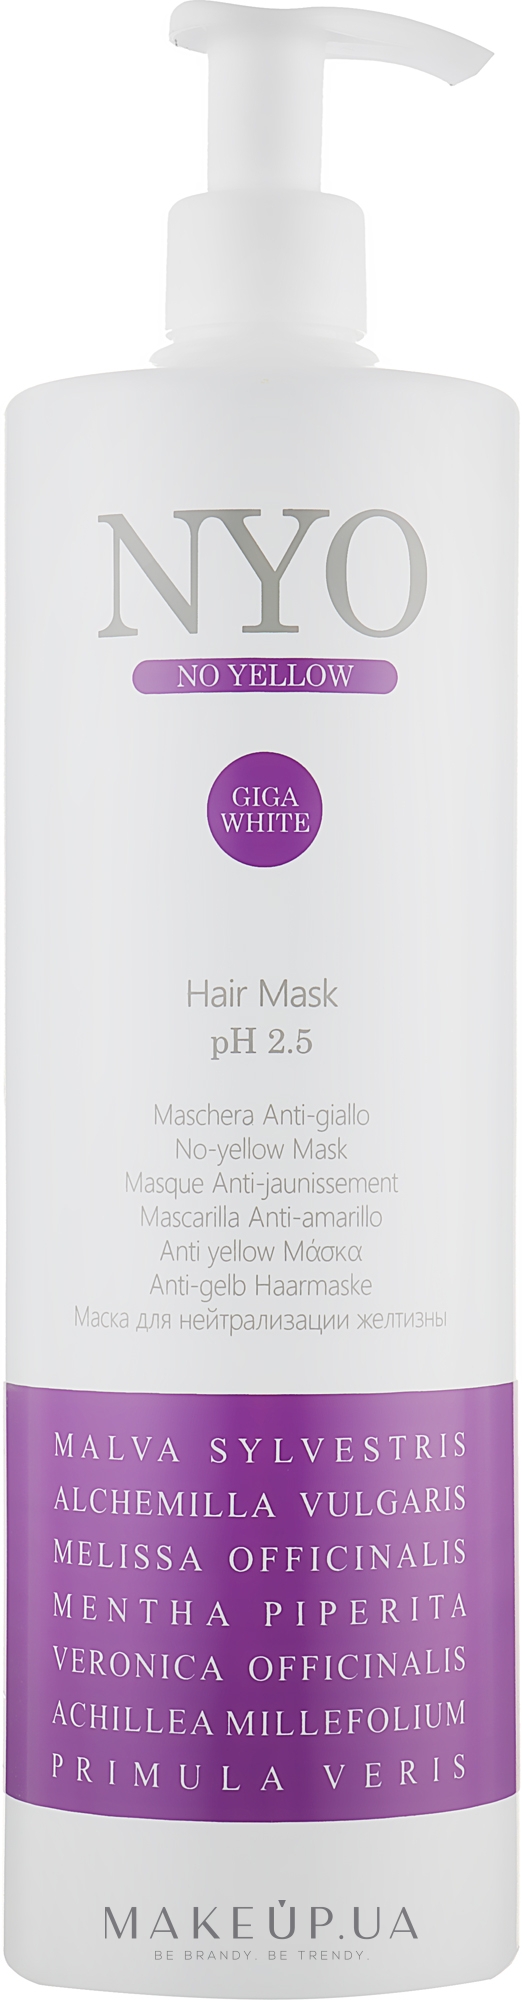 Маска для нейтралізації жовтизни волосся - Faipa Roma Nyo No Yellow Hair Mask — фото 1000ml